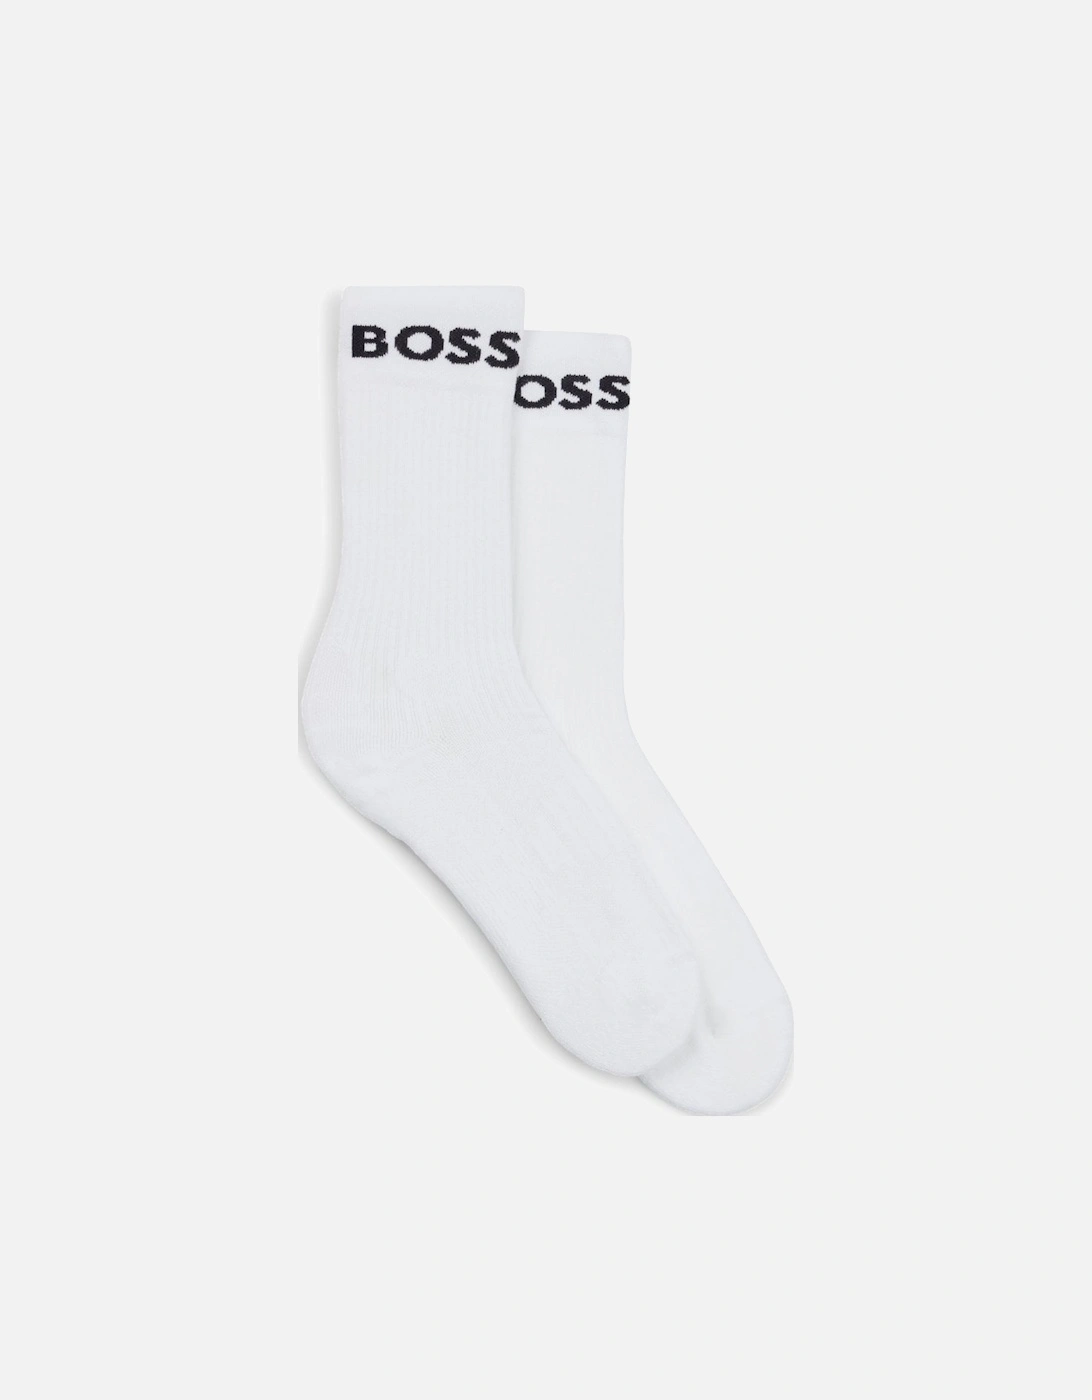 BOSS Green 2 Pack RS Sport Socks NOS, 4 of 3